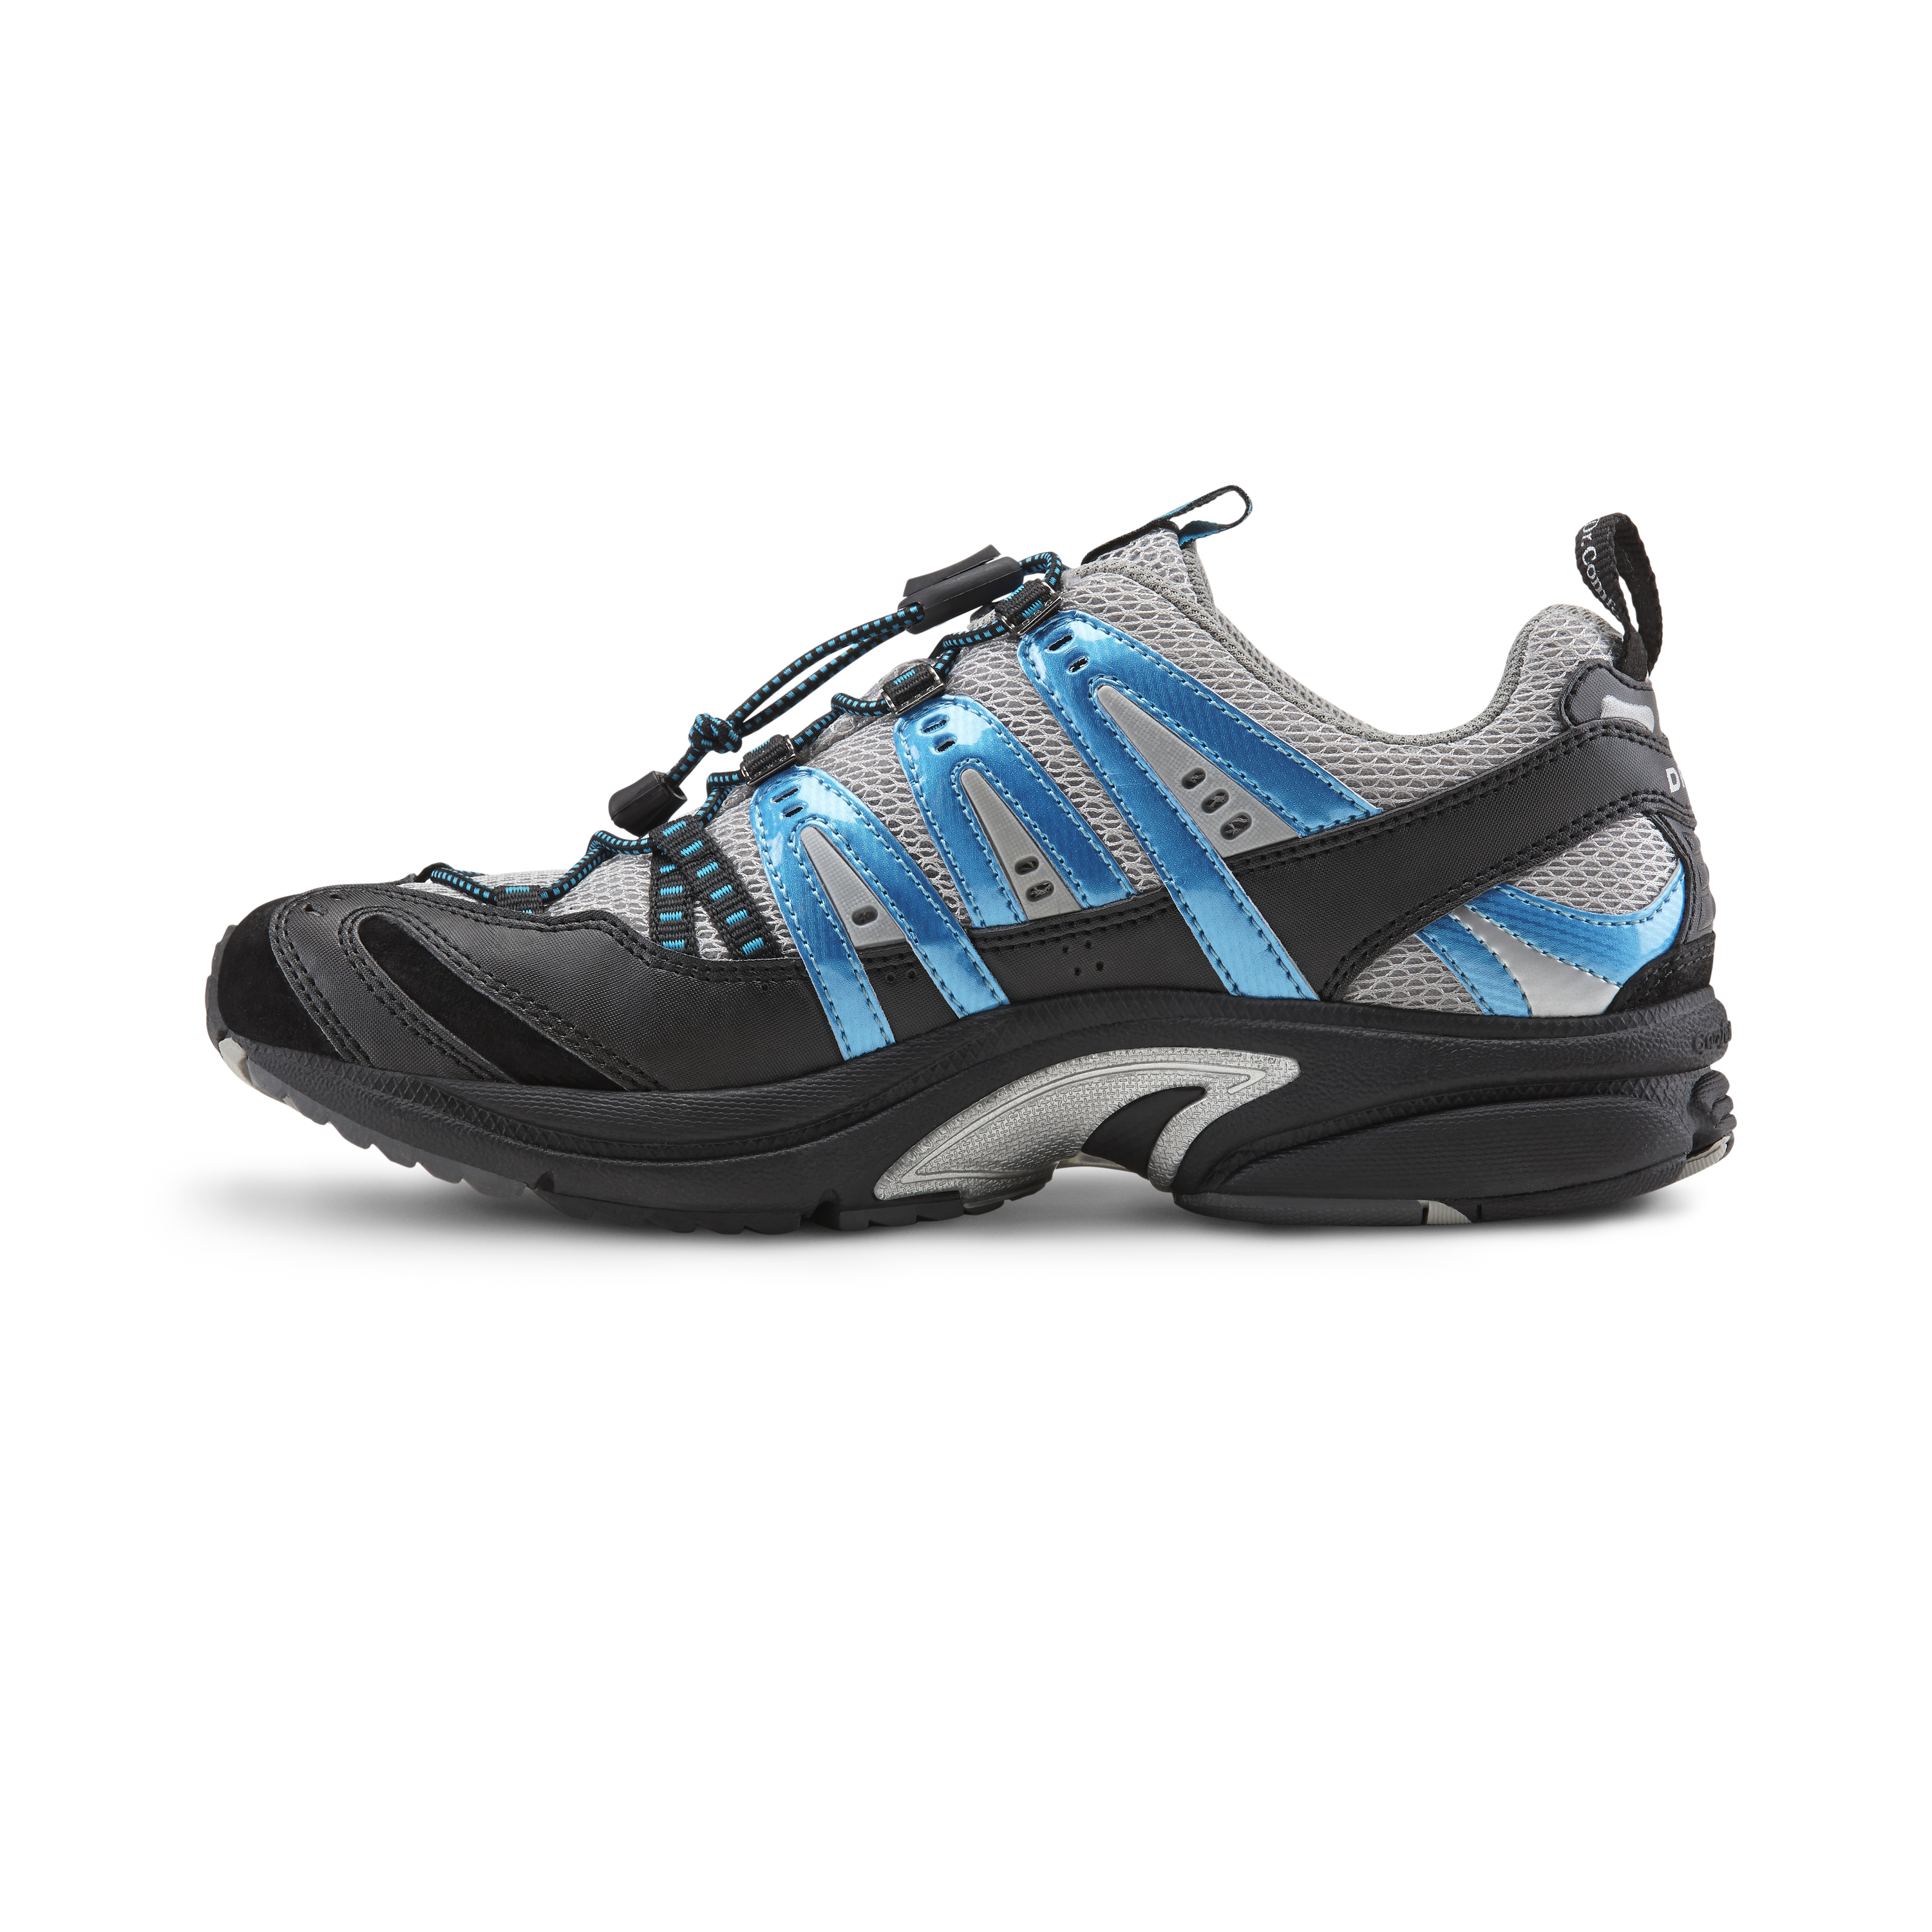 Zusatzbild DR. COMFORT® Performance blau, innen, Orthopädische Schuhe, Ideal für den aktiven Mann. Leichter und komfortabler Freizeitschuh